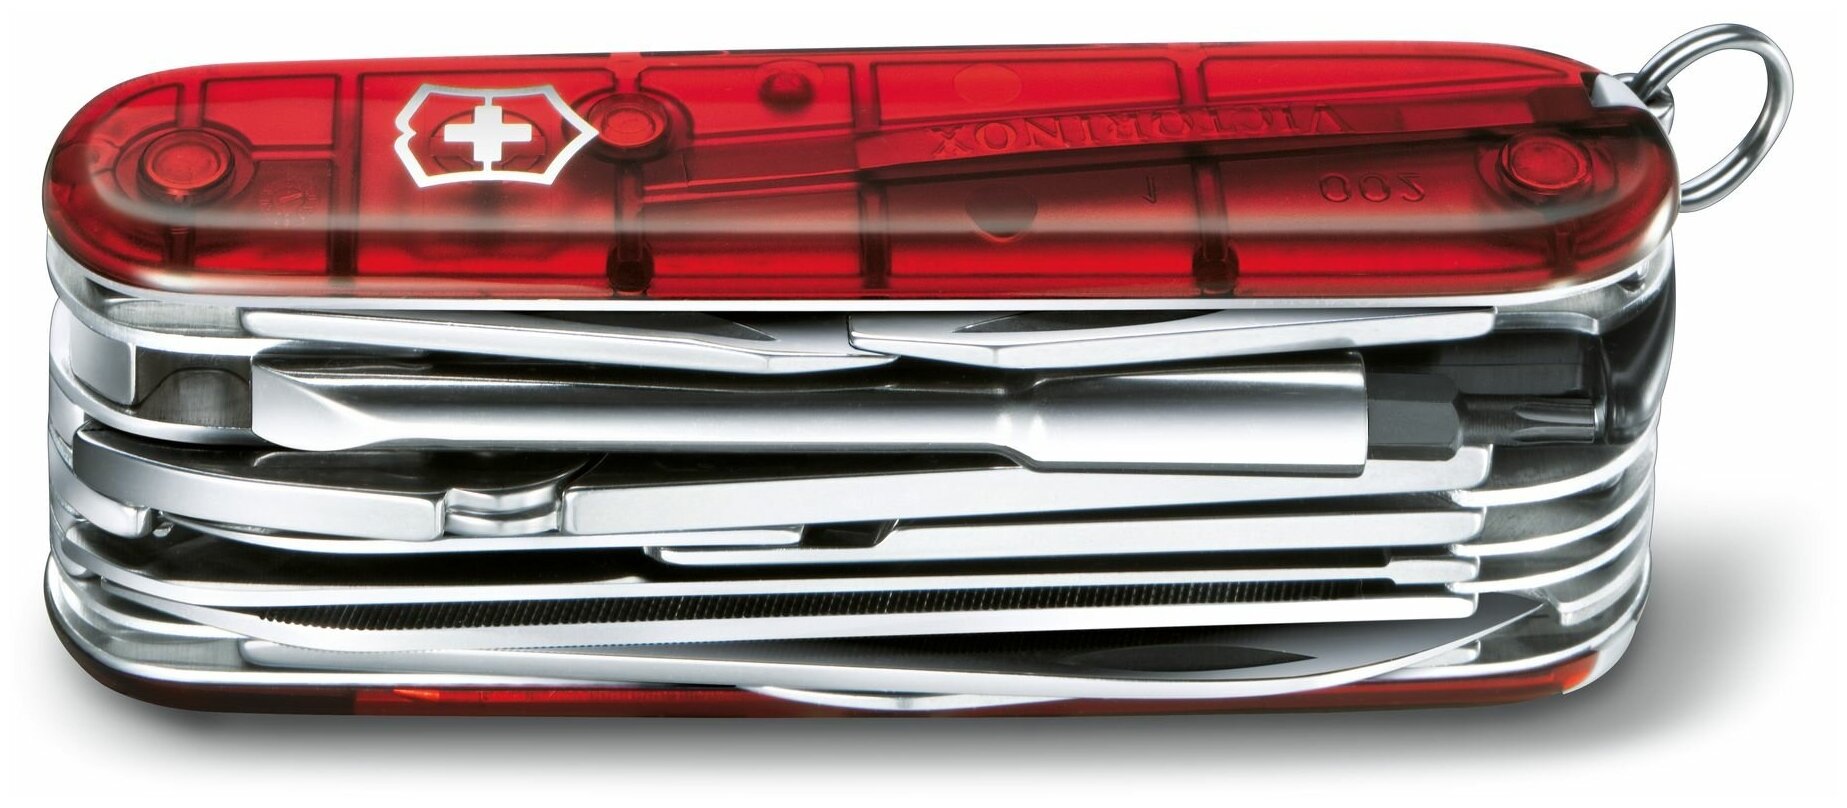 Нож перочинный Victorinox CyberTool L (1.7775.T) 91мм 39функций красный полупрозначный карт.коробка - фото №3